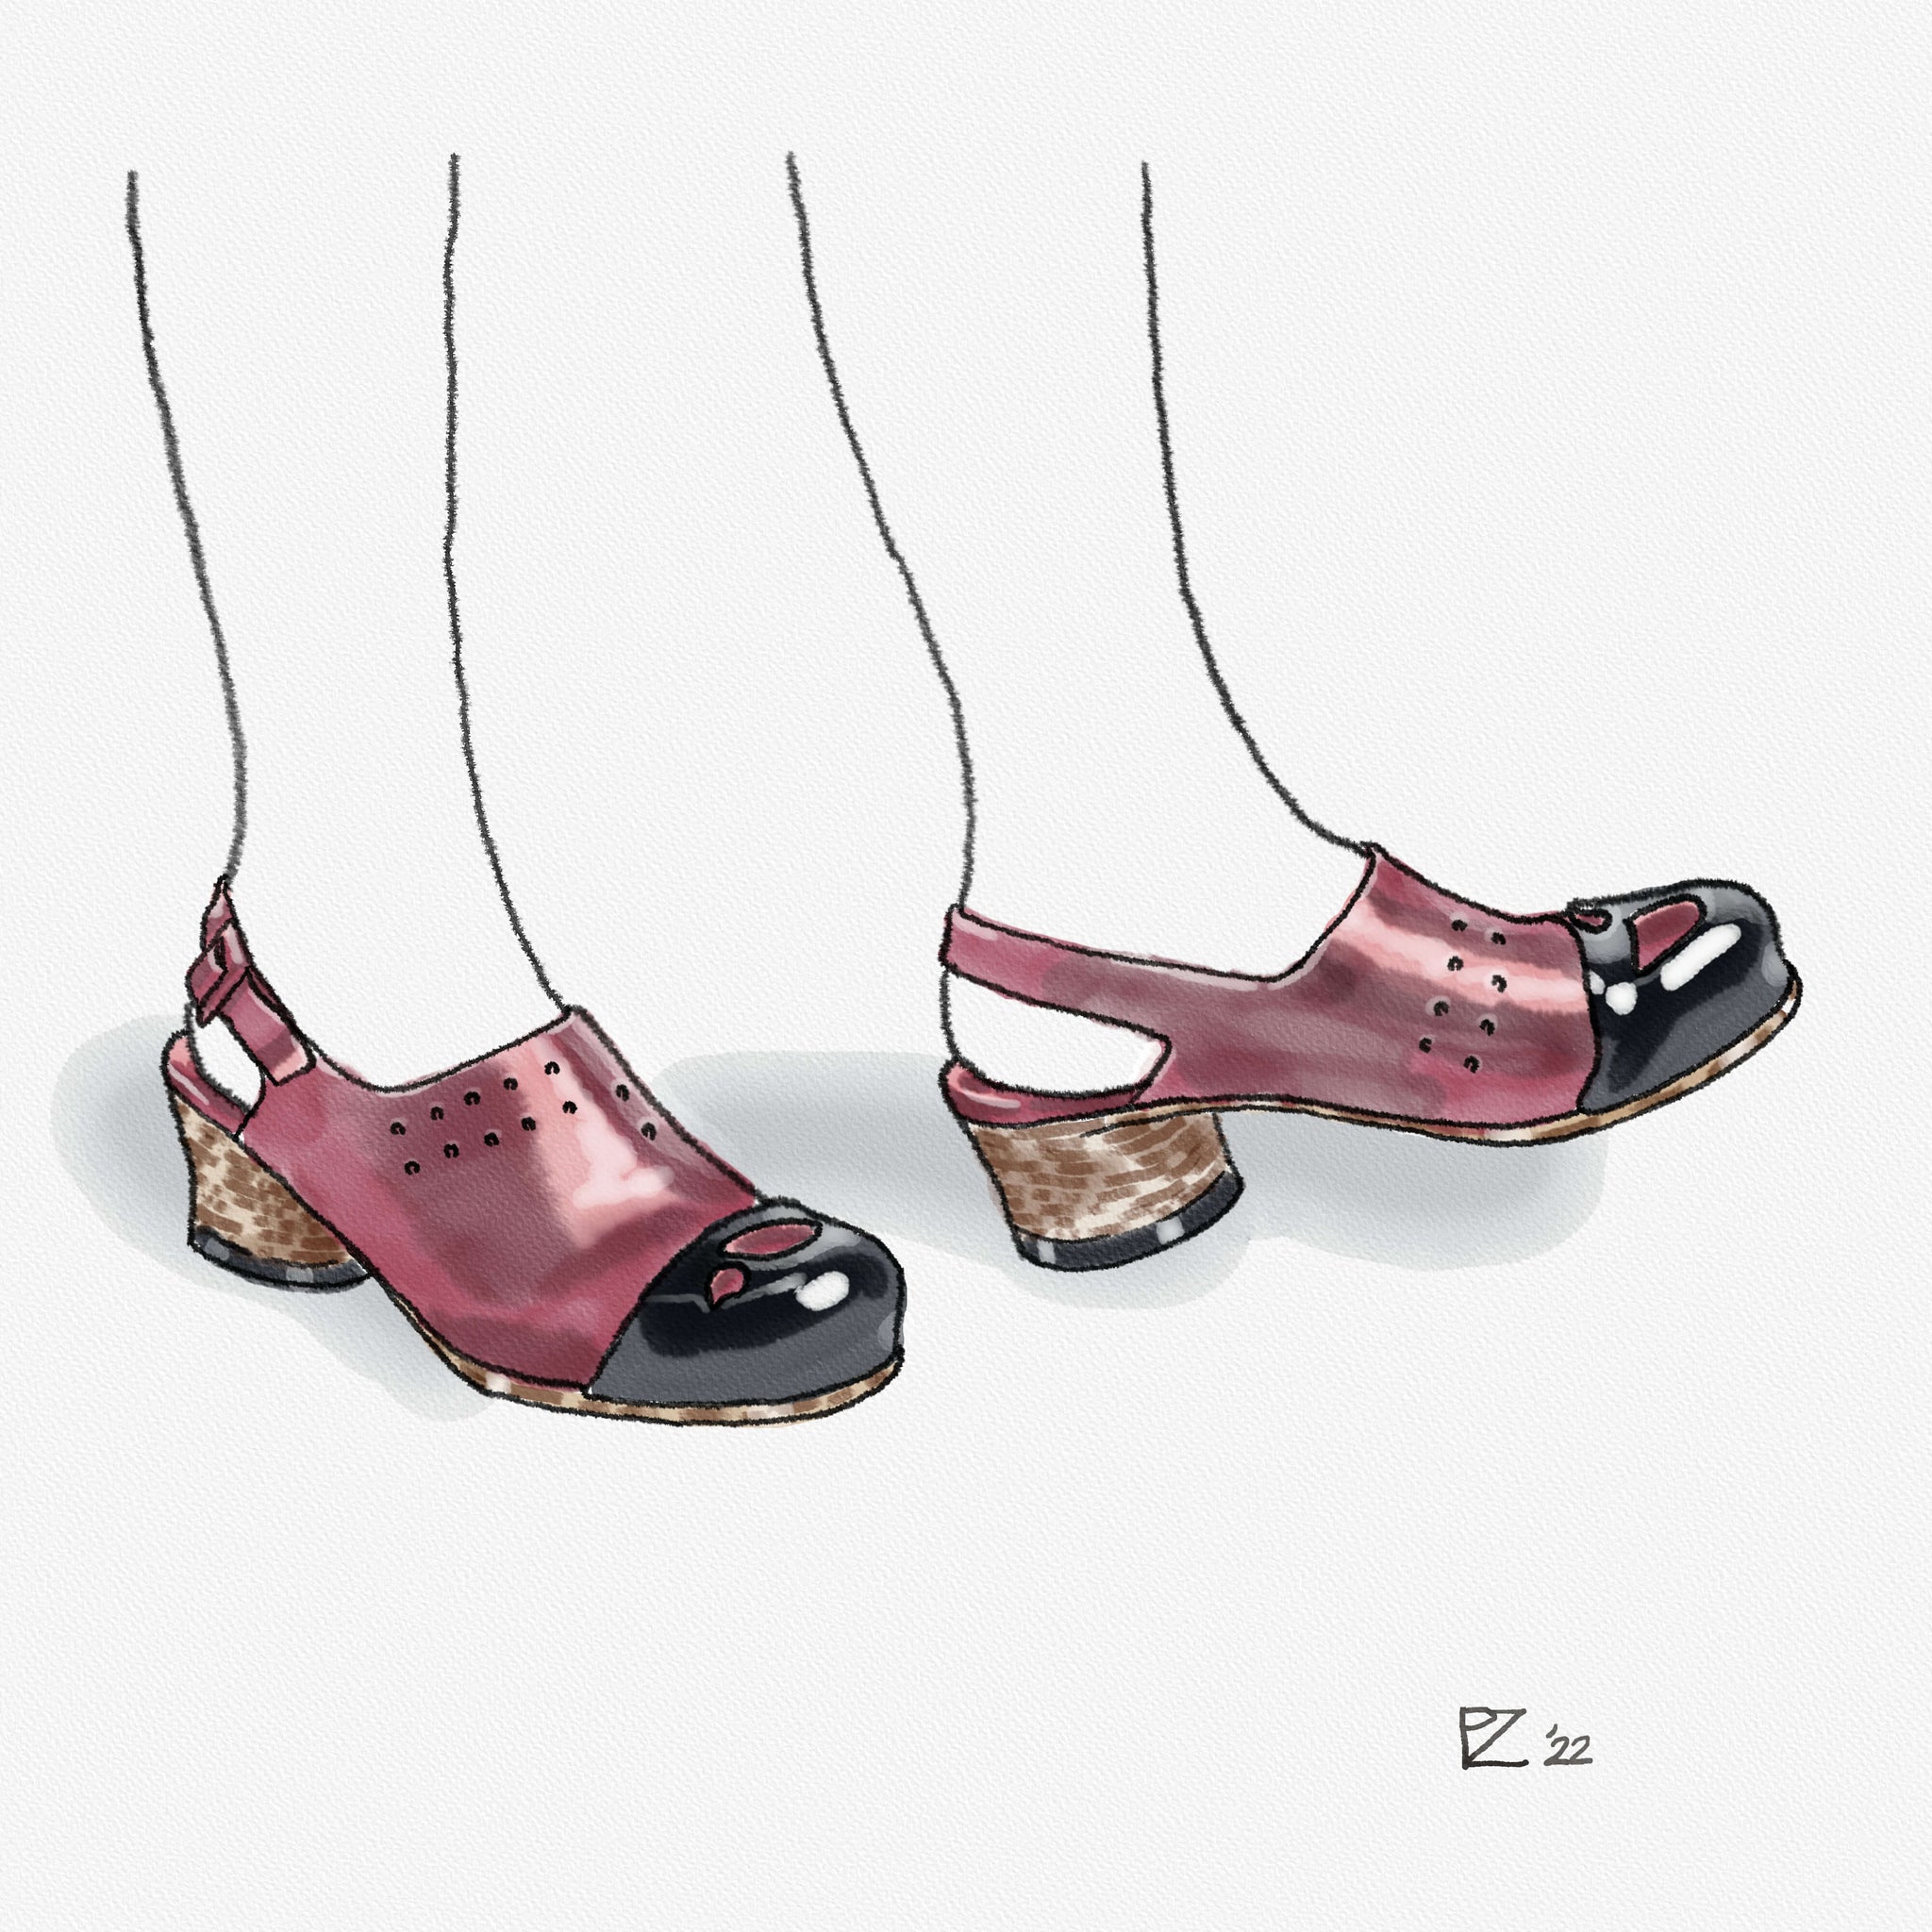 Hepburn Clog - Rust/Black Toe